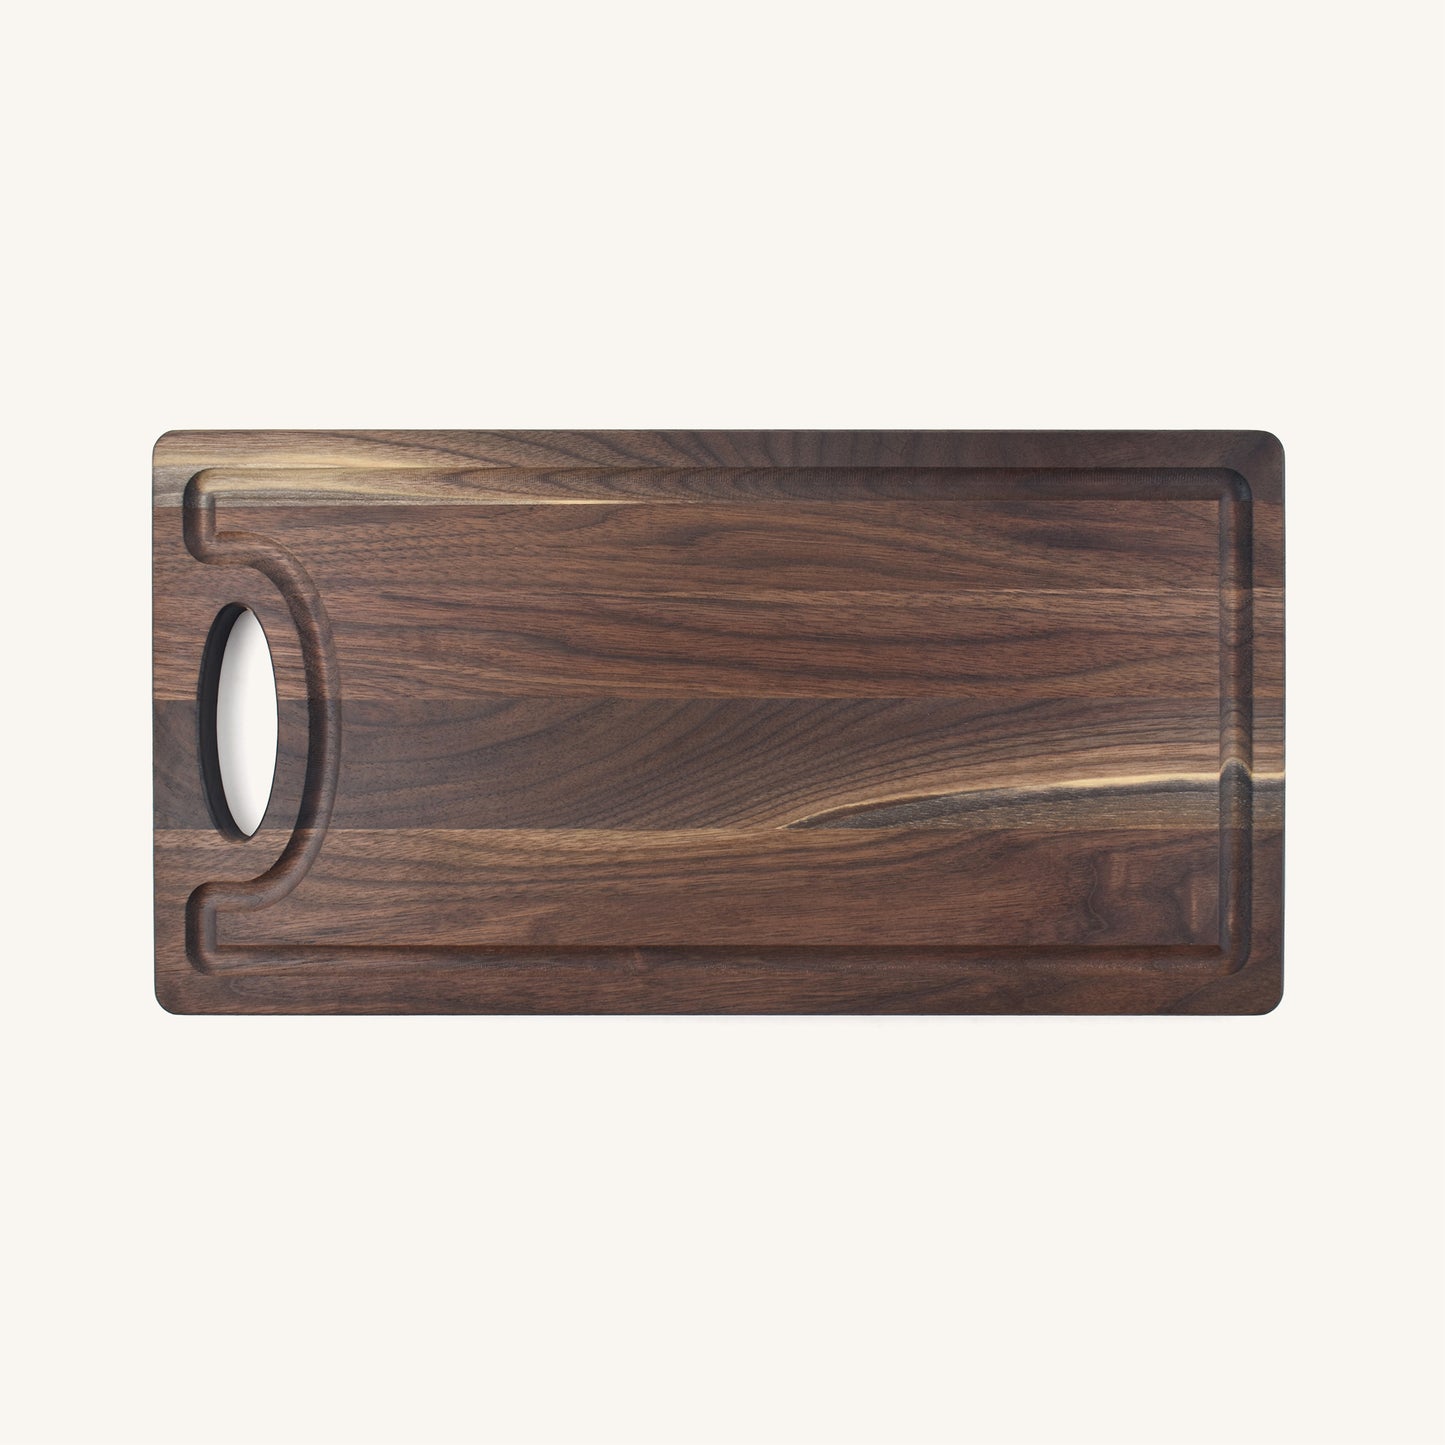 Medium Wood Cutting Board with a Handle